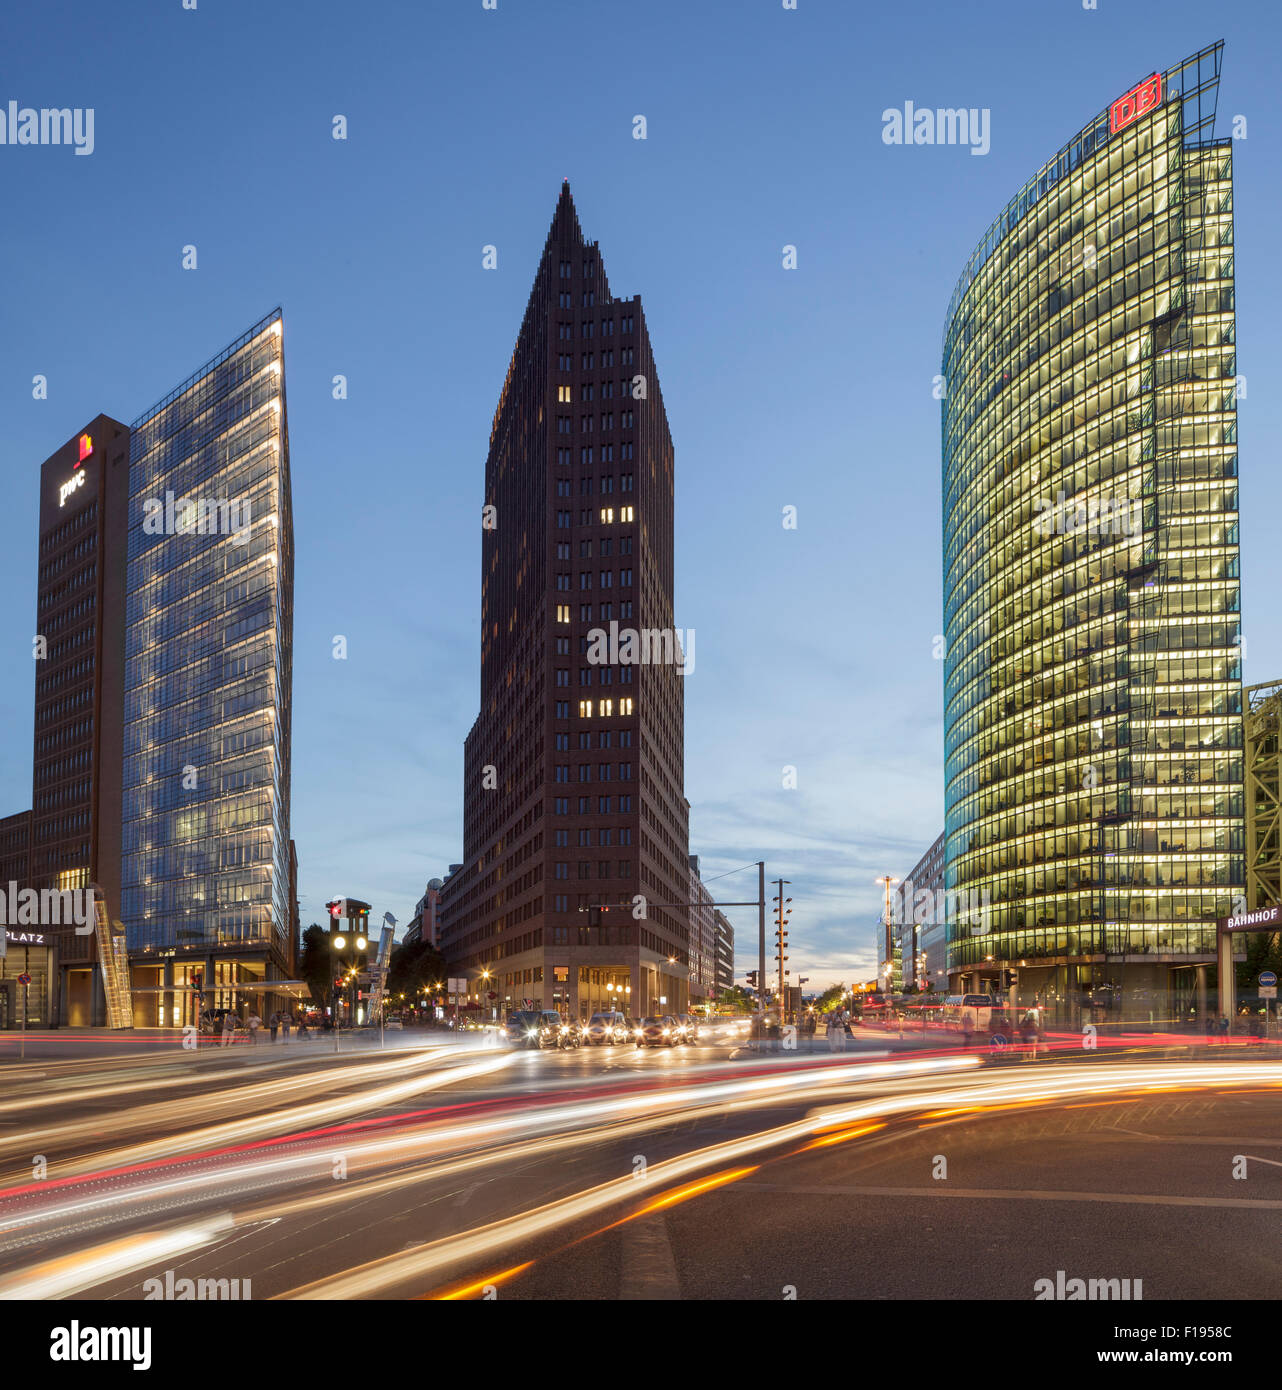 Potsdamer Platz, mit Potsdamer Platz 11 von Renzo Piano, Kollhoff-Tower und der DB-Bahn-Tower, Berlin, Deutschland Stockfoto